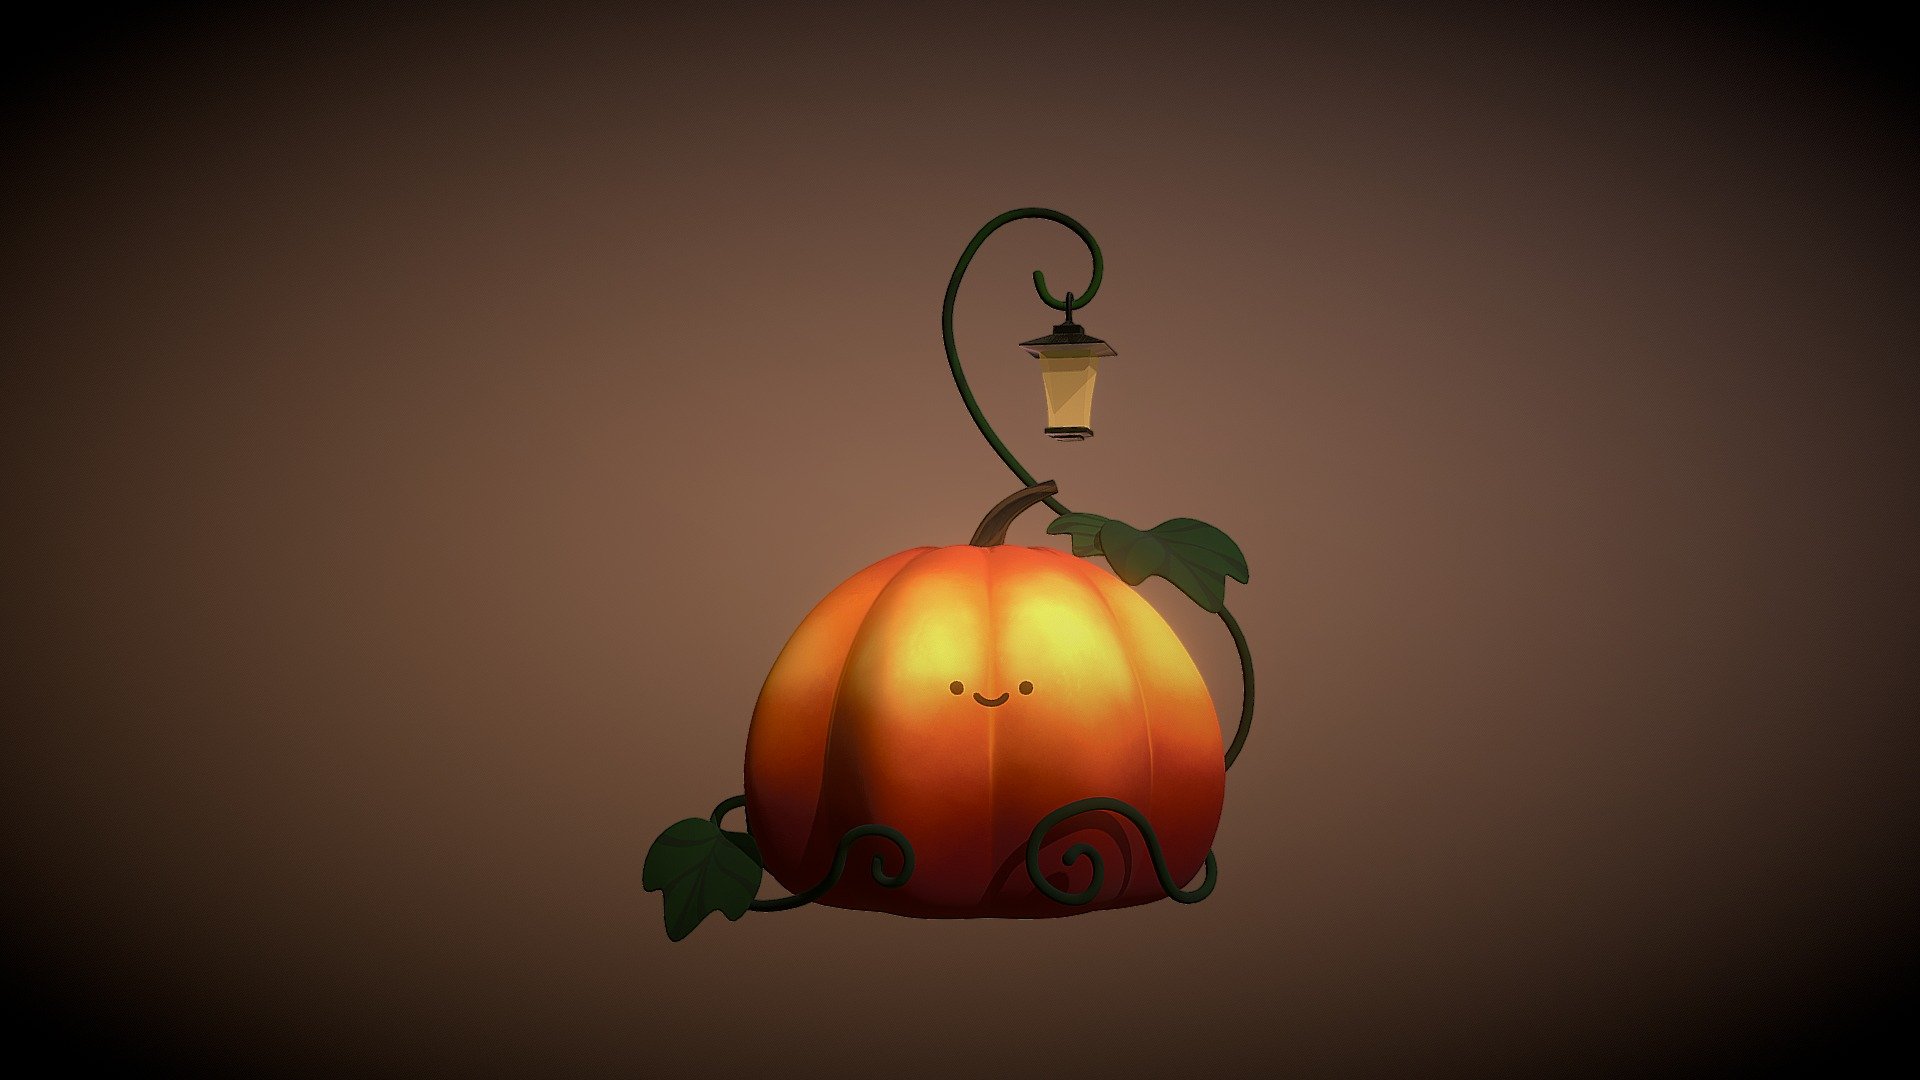 made a 3D model based on my own concept art. 

cute little pumpkin - Good pumpkin - 3D model by Shi0n 3d model